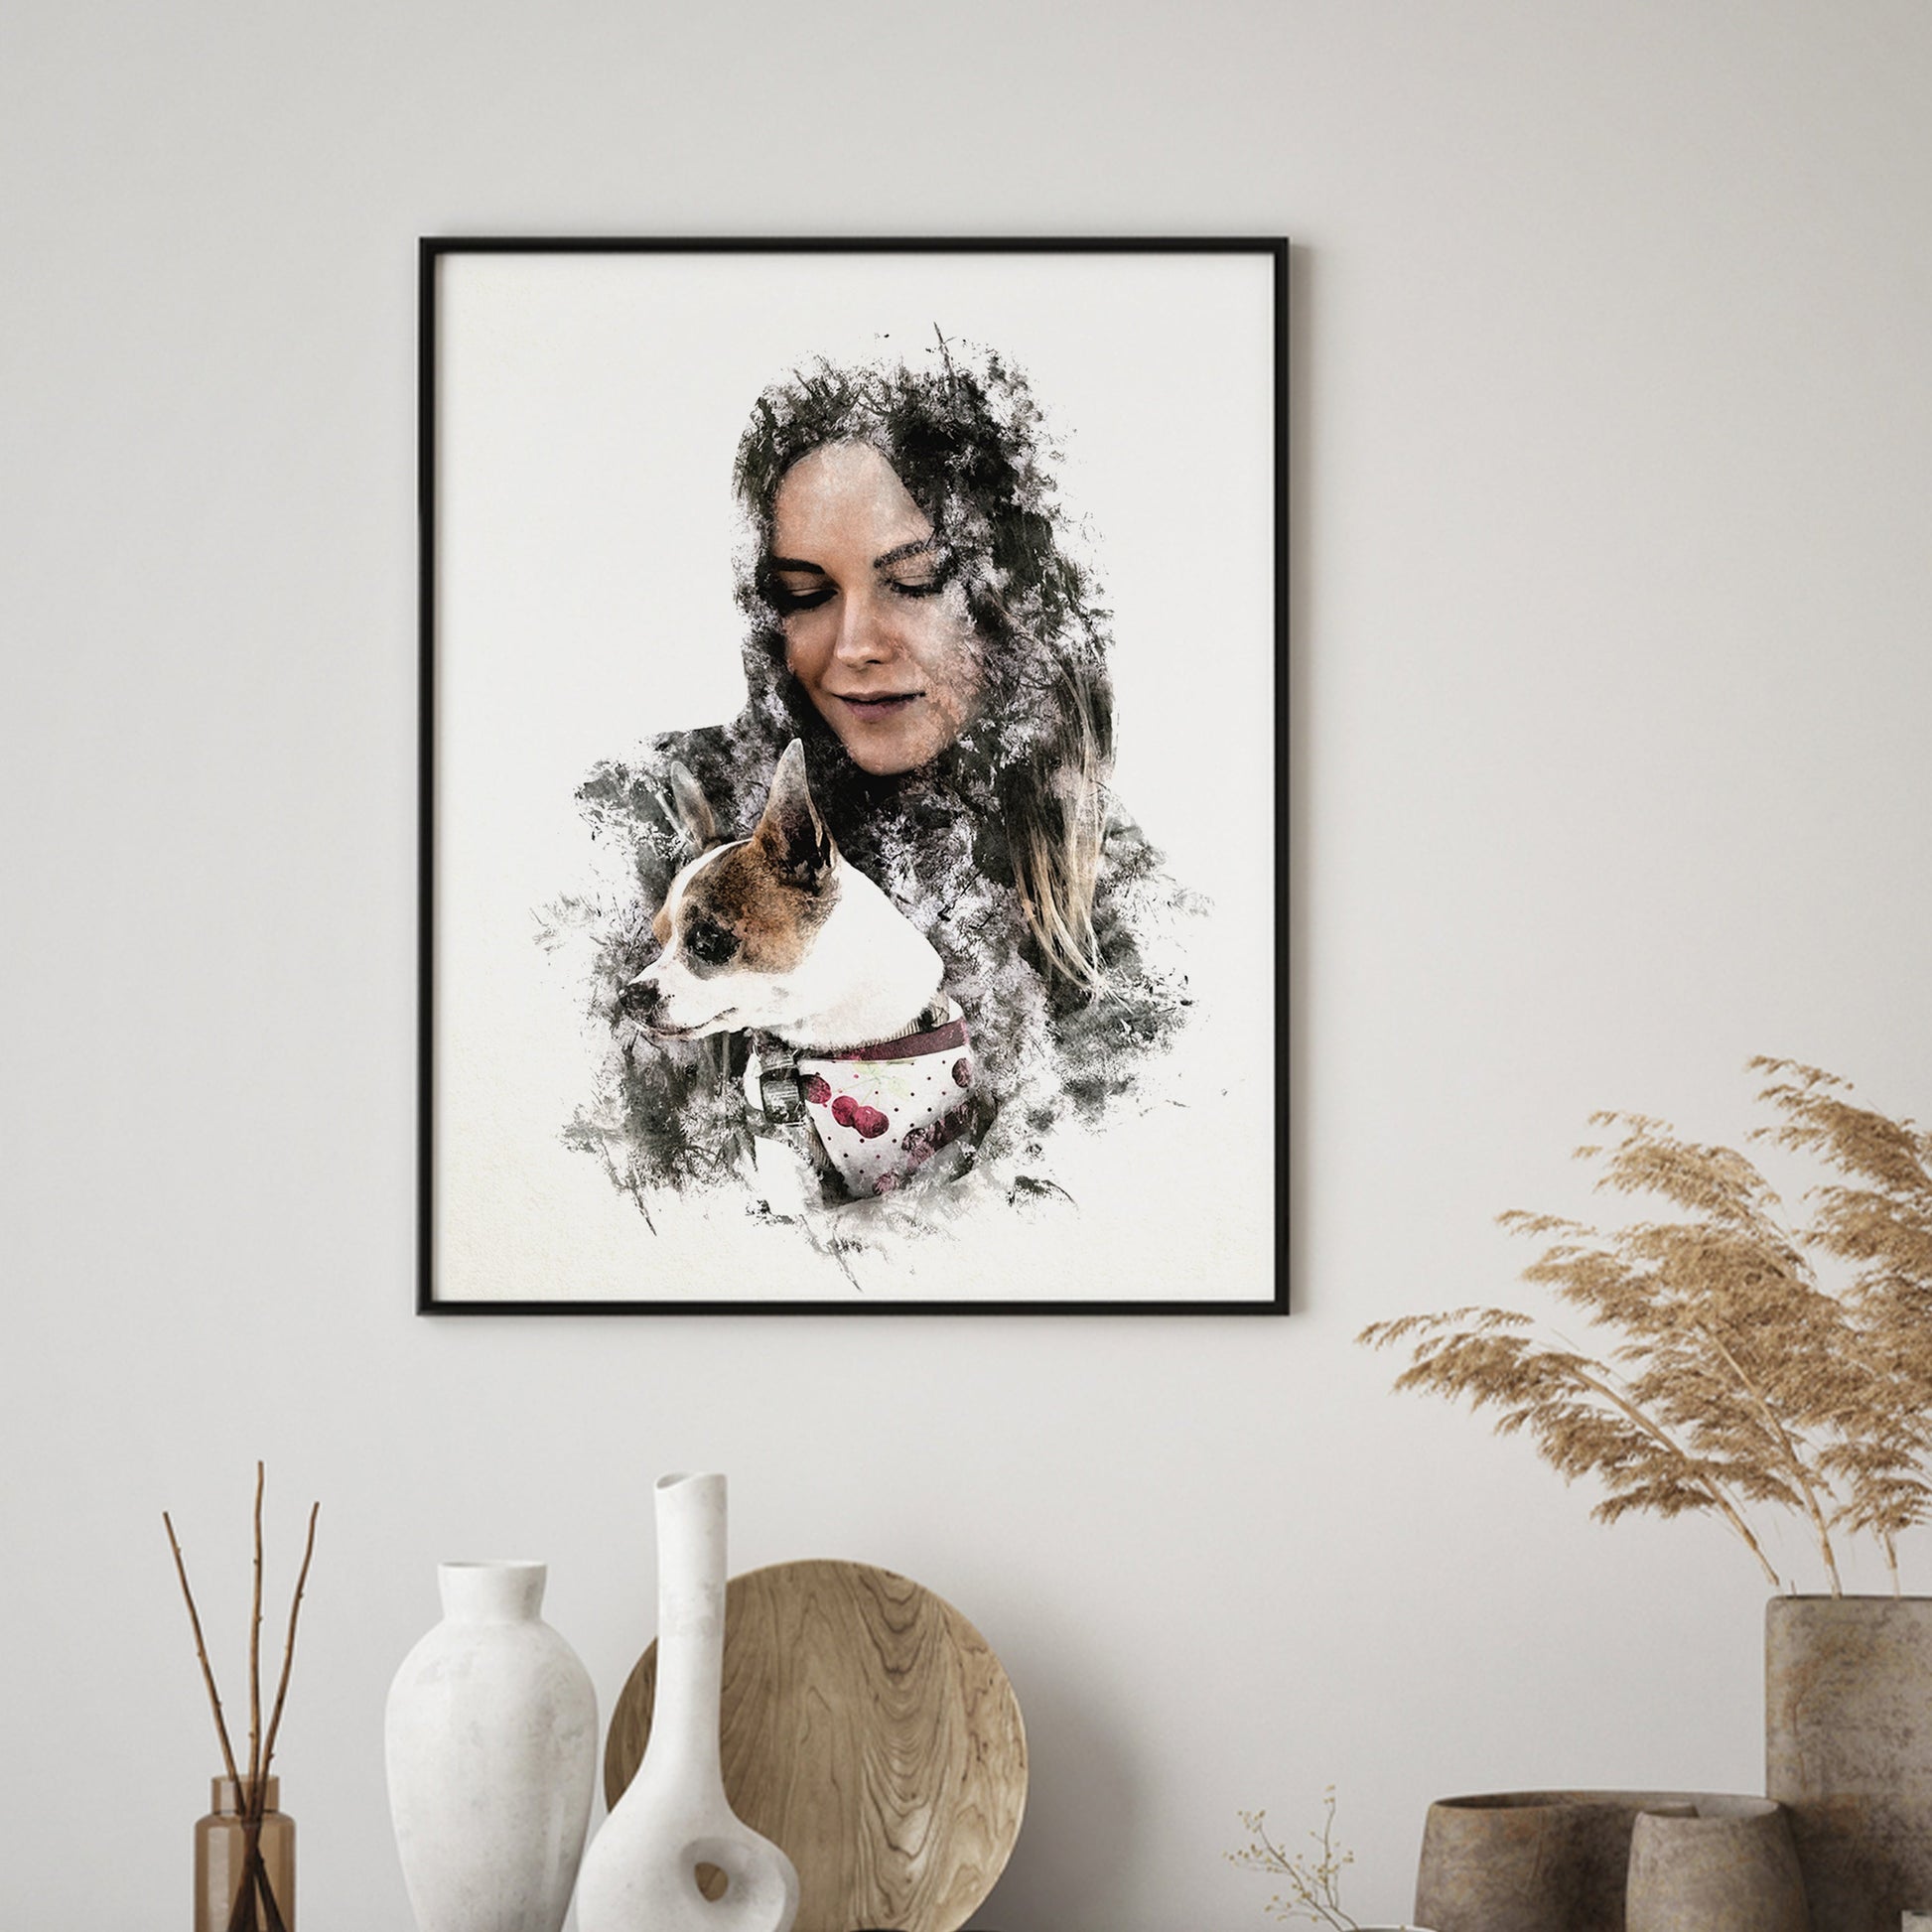 Custom dog portrait captures heartfelt gift for her.